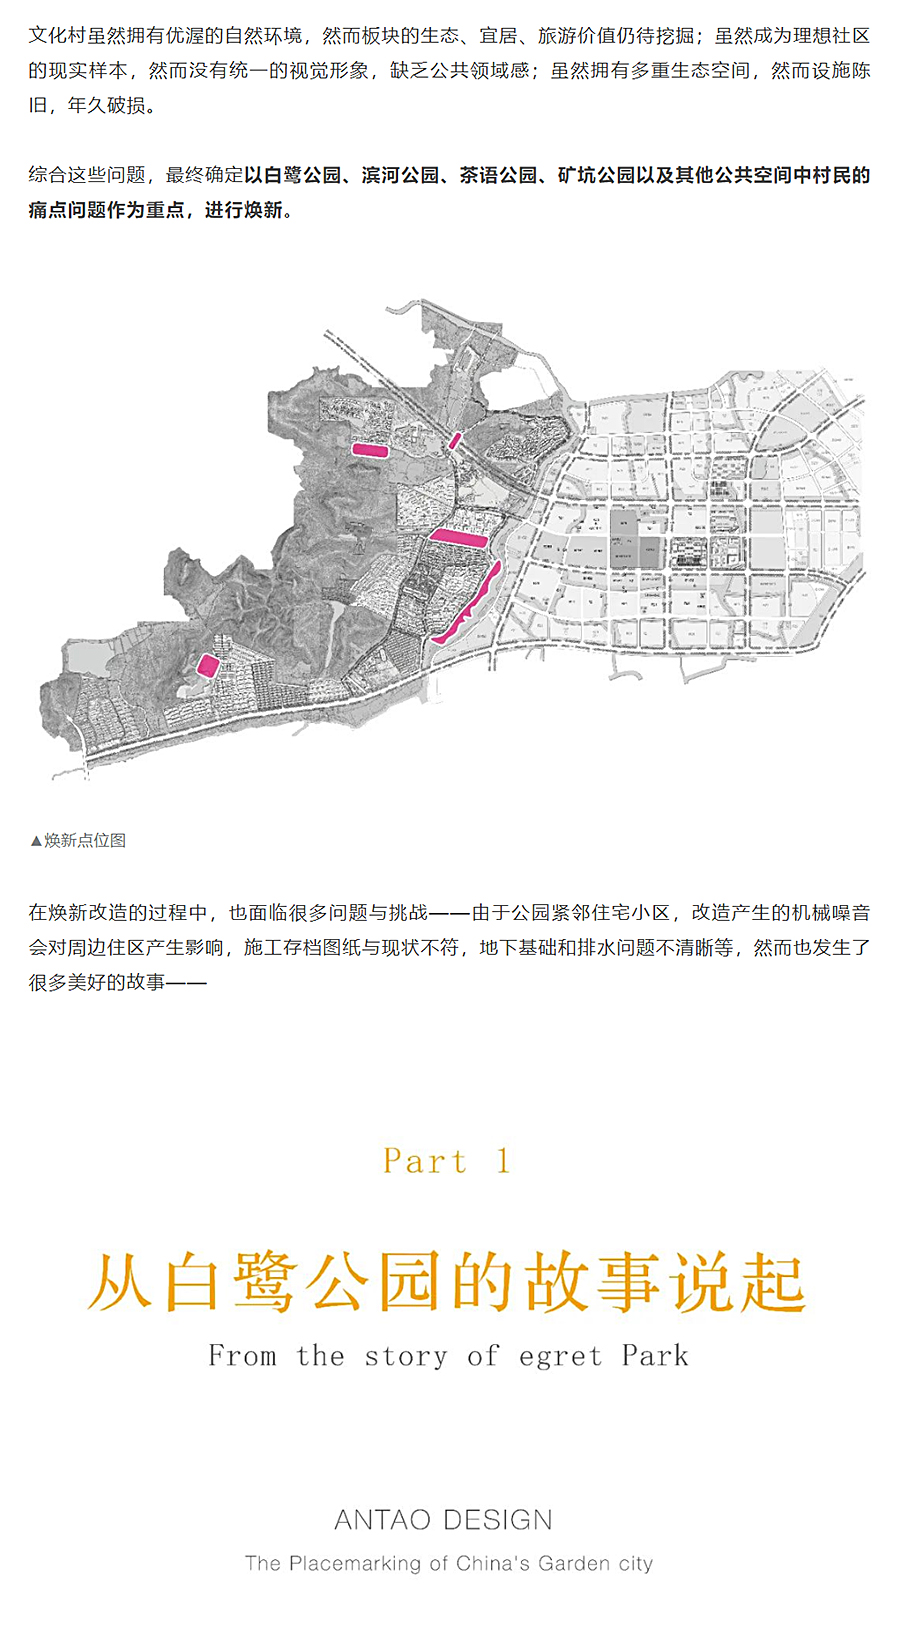 迭新作品-│-安道设计：中国田园城市范本的微更新改造_0004_图层-5.jpg